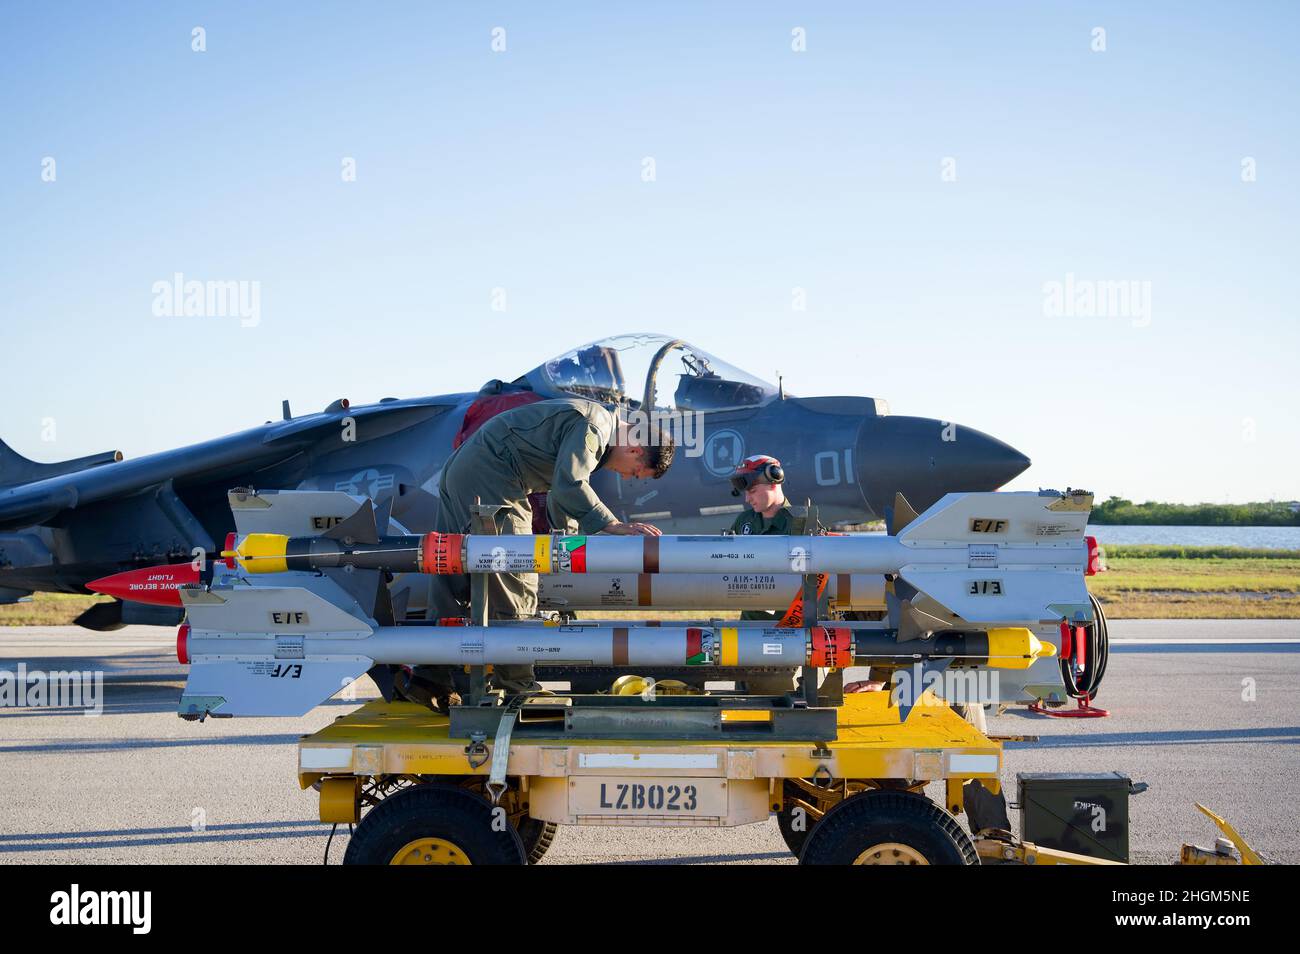 220119-N-IW125-1034 KEY WEST, Fla. (Enero 19, 2022) Estado Mayor de los Marines de los Estados Unidos Sgt. Marcos Aguilar, de Snider, Texas, a la izquierda, y Lance Cpl. Jack Richardson, de Streator, Ill., adjunto al Marine Attack Squadron (VMA) 231 “Ace of Spades” Prepare para cargar misiles AIRE a aire DE alcance medio avanzados AIM-120 en un avión A-8B II Harrier para un ejercicio de entrenamiento de municiones en Boca Chica Field, de la Estación Aérea Naval Key West, en Key West, Key West, Florida, 19 de enero de 2022. La Estación Aérea Naval Key West es la instalación de última generación para aviones de combate de todos los servicios militares, proporciona apoyo de primera clase a los Estados Unidos Foto de stock